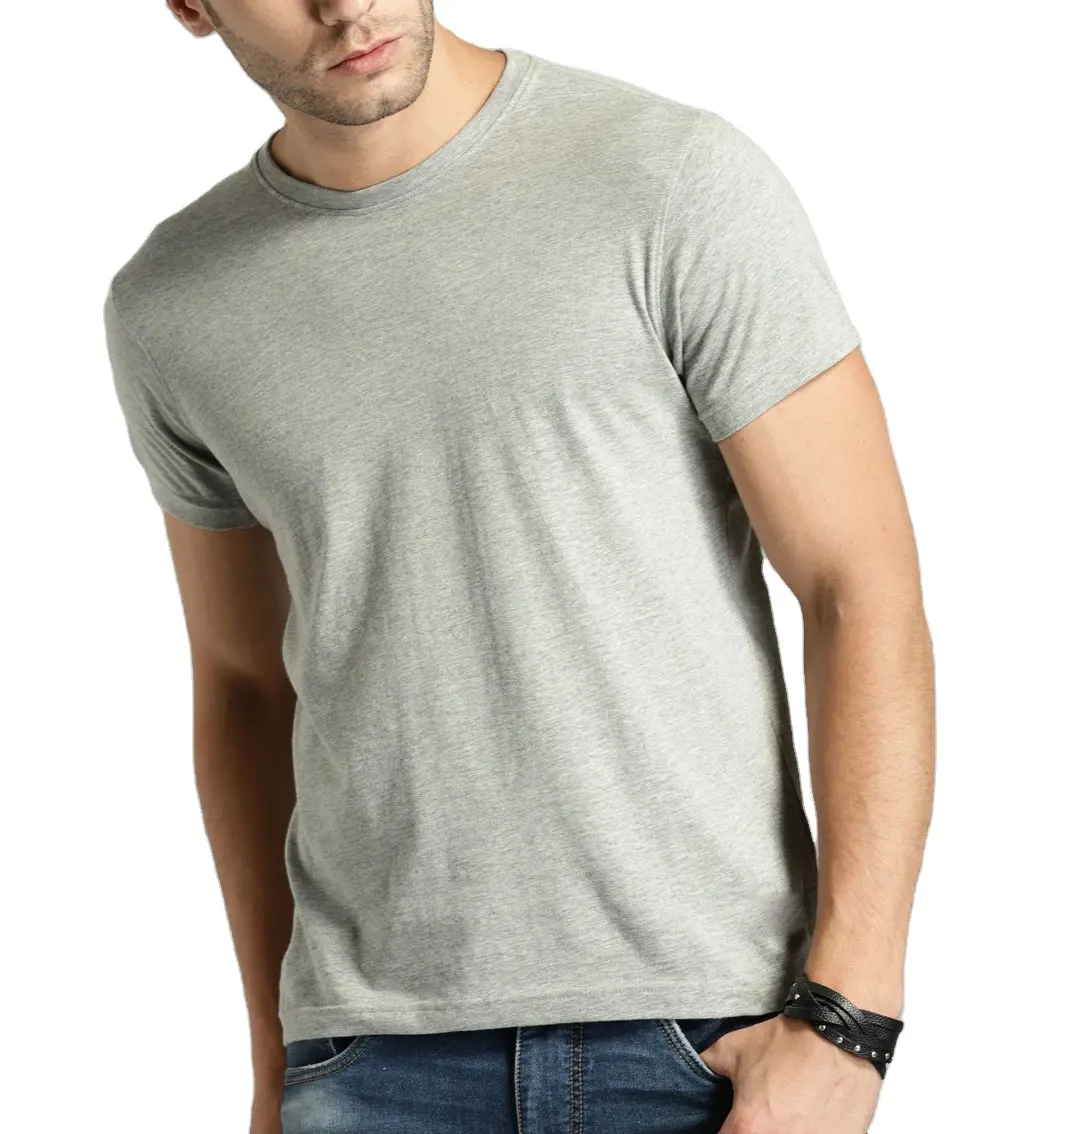 Özel ihracat kaliteli gri melanj katı yuvarlak boyun erkek t-shirt